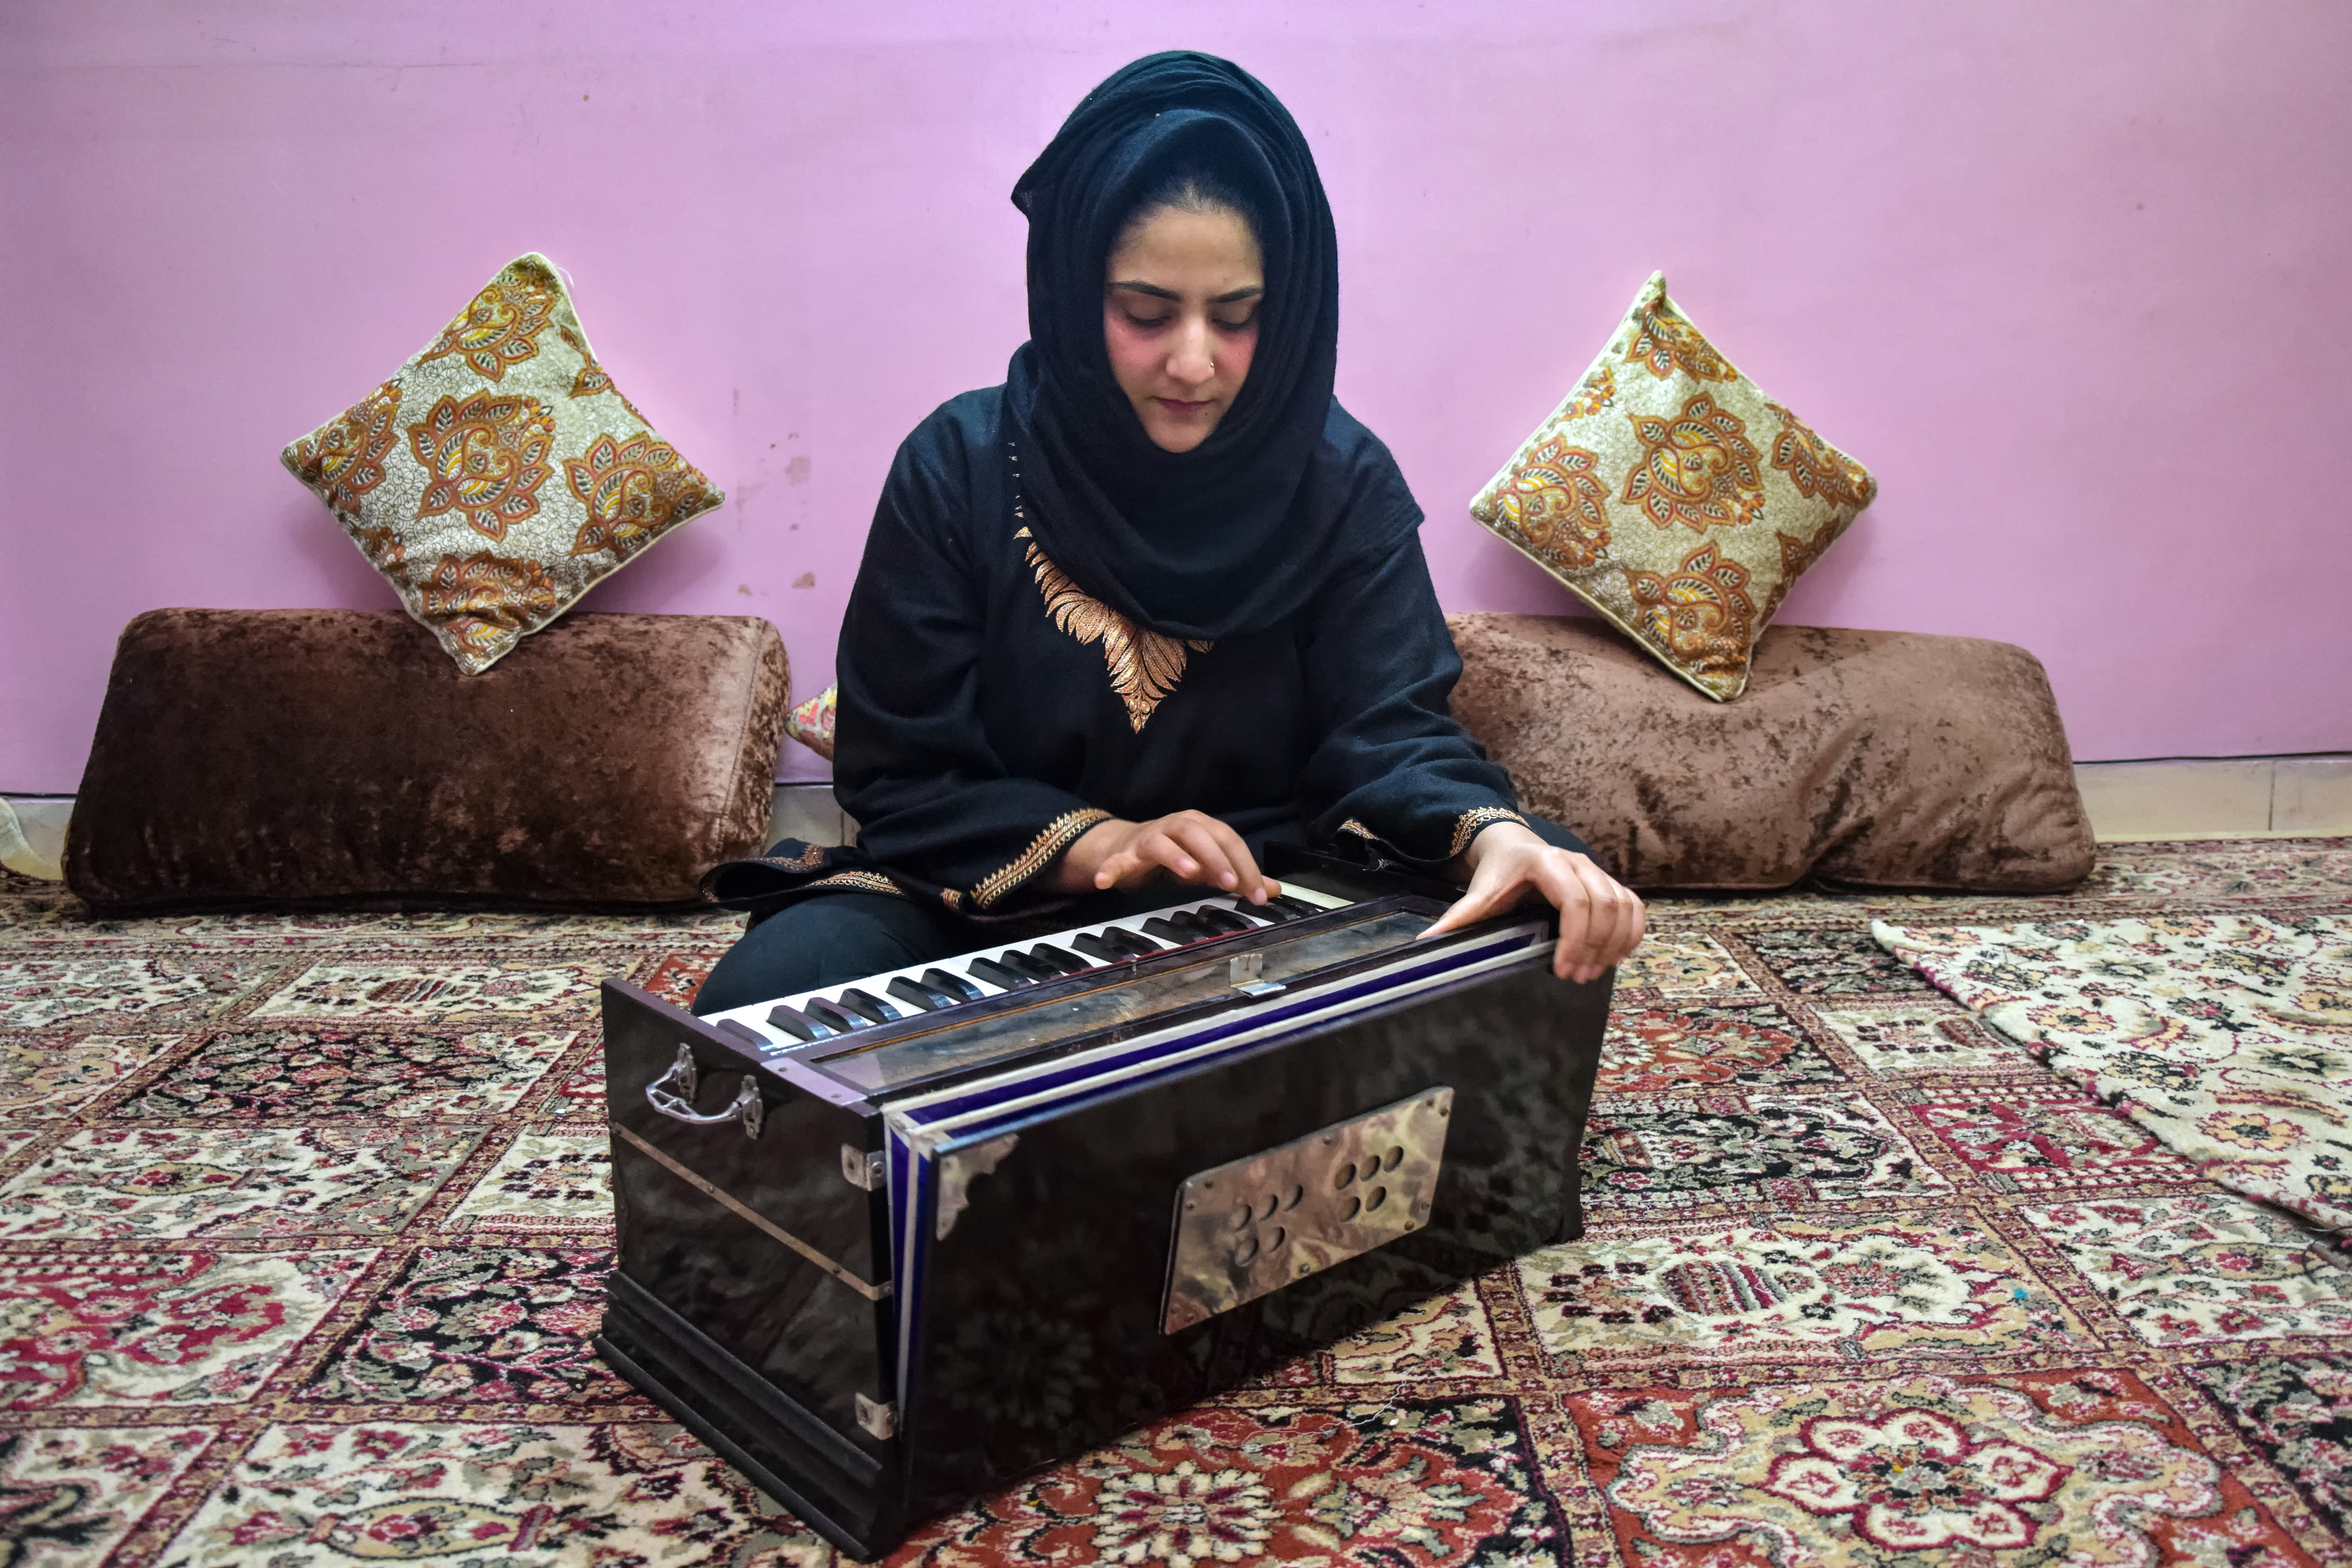 Female Kashmiri Artists Take Their Talents Elsewhere